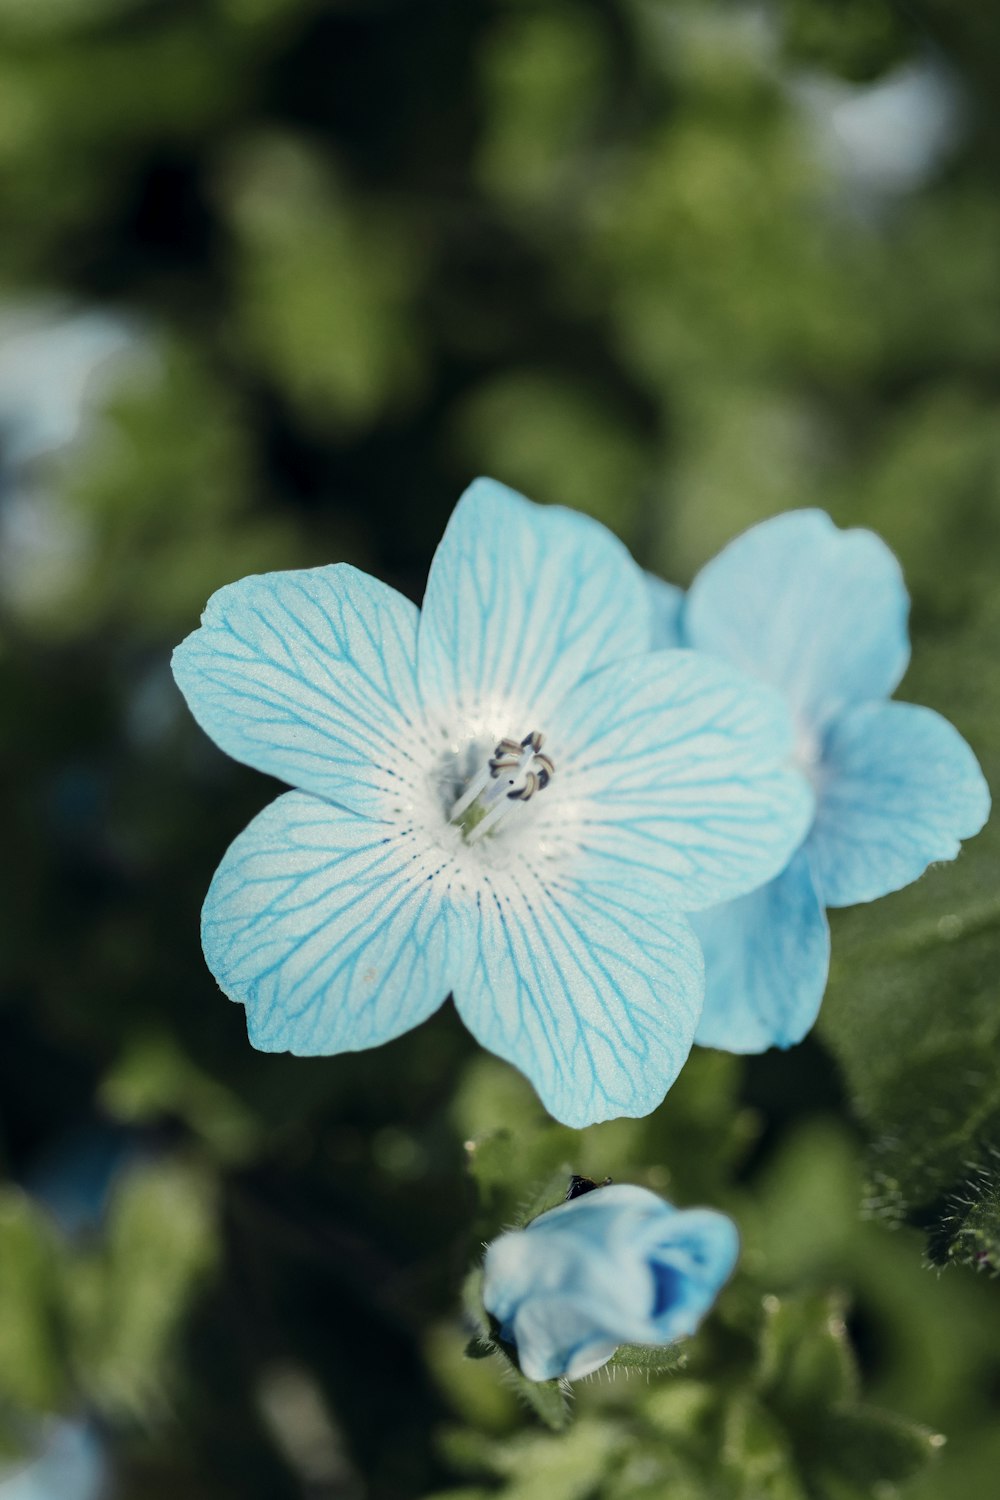 틸트 시프트 렌즈의 파란색 꽃